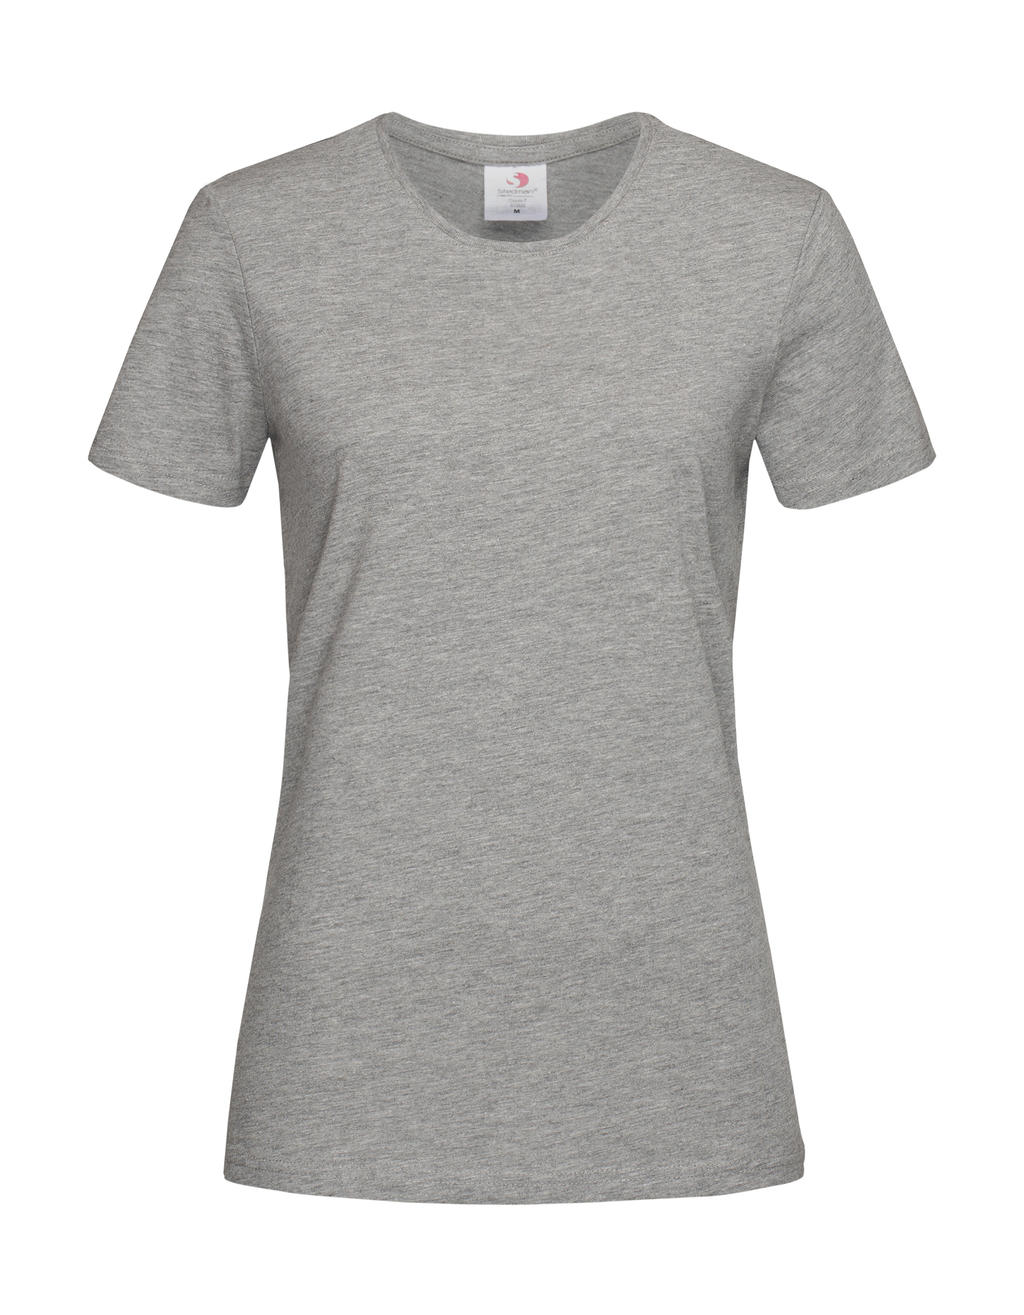 Tričko dámské Stedman Fitted s kulatým výstřihem - šedé-bílé, XL